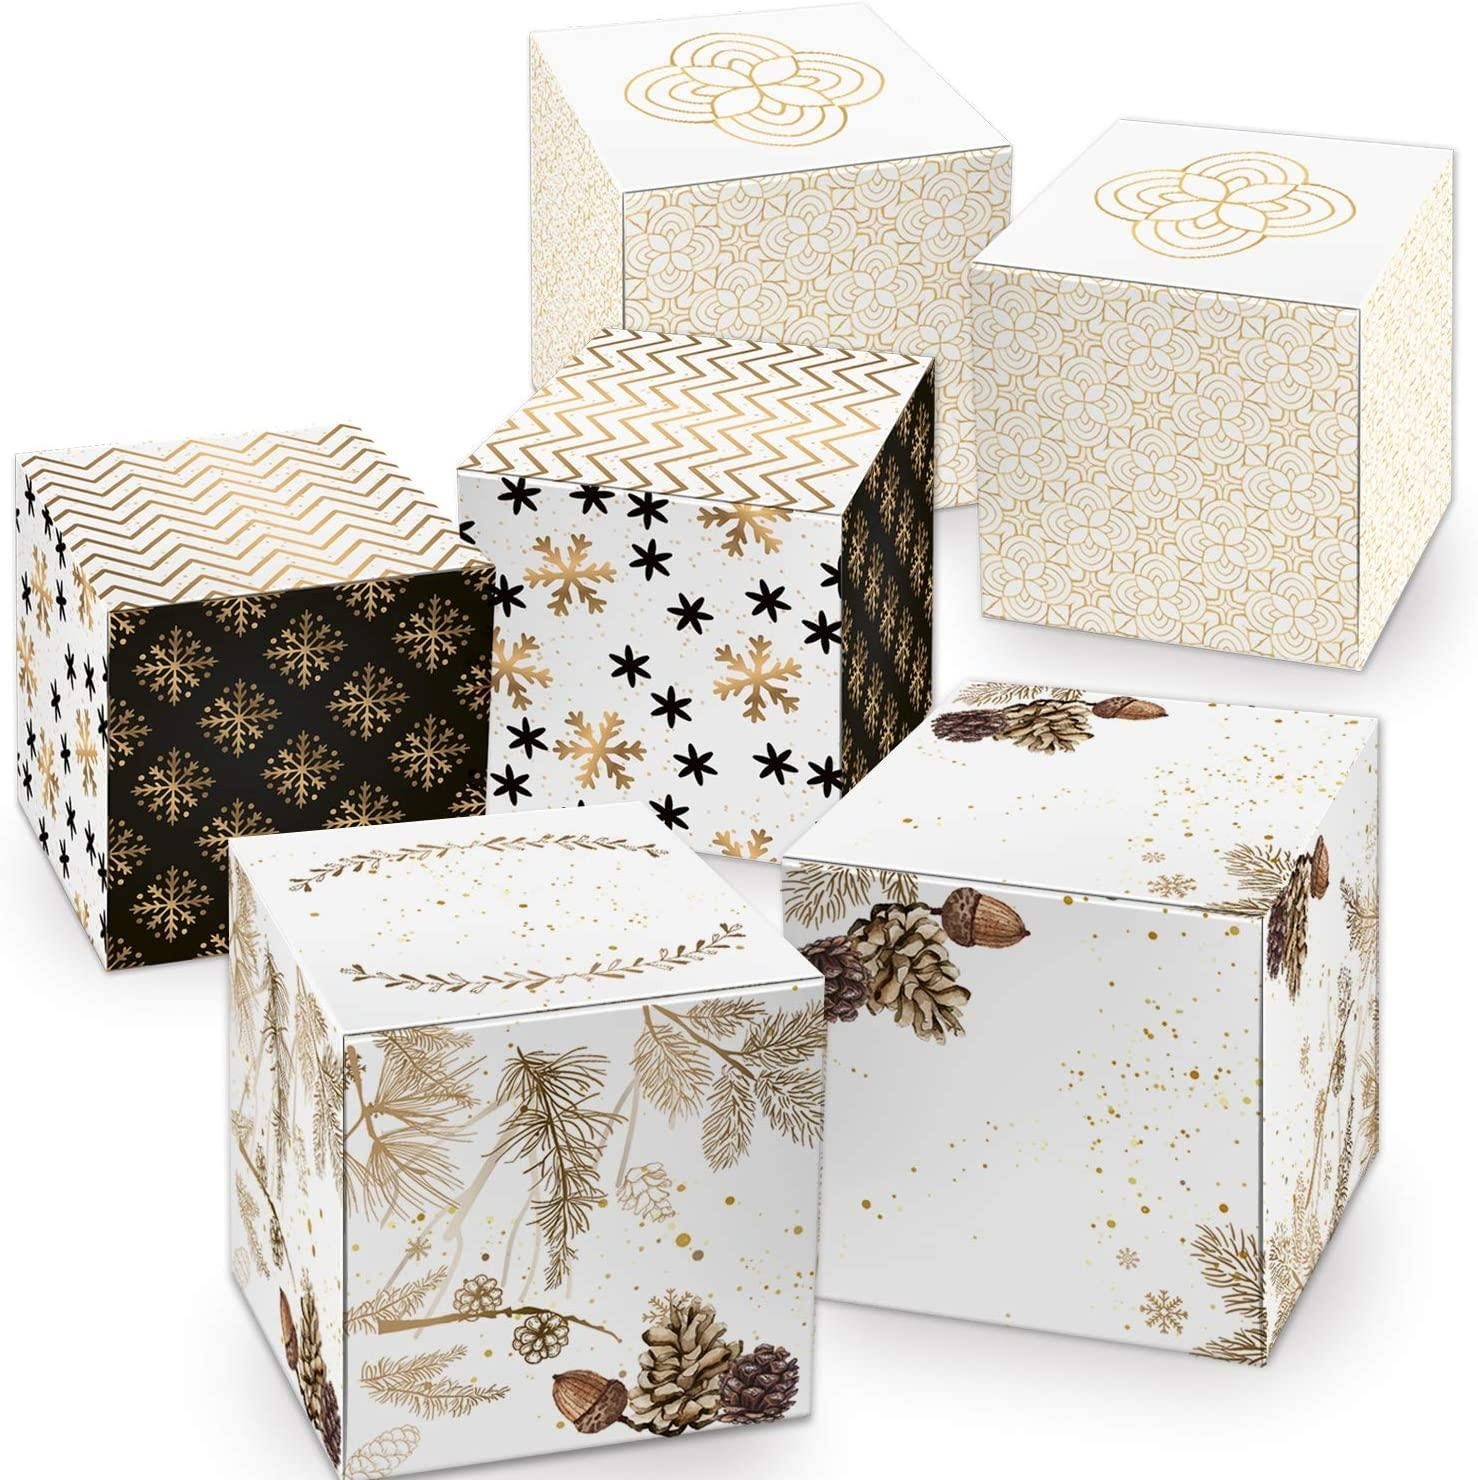 Logbuch-Verlag Geschenkbox Geschenkboxen Set 3 x 5 in gold weiß schwarz